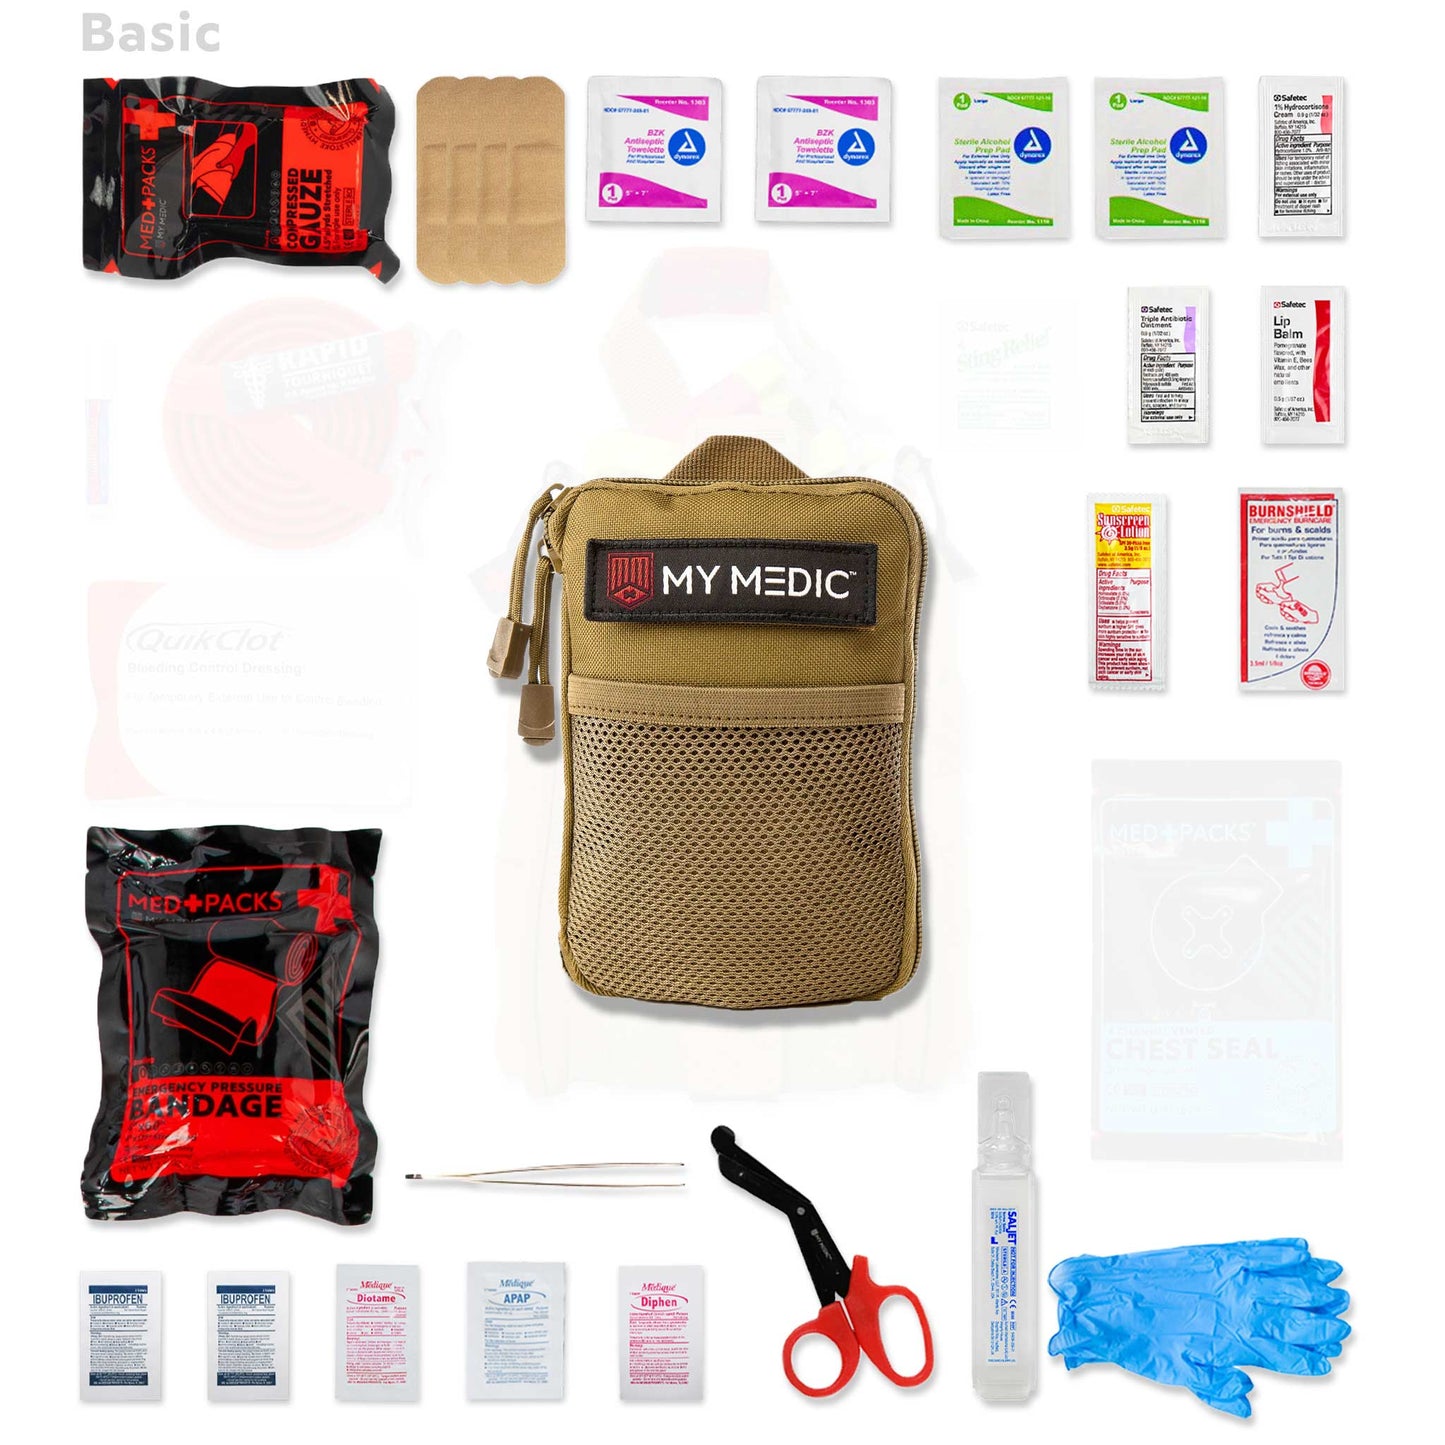 TFAK (Trauma | First Aid Kit)